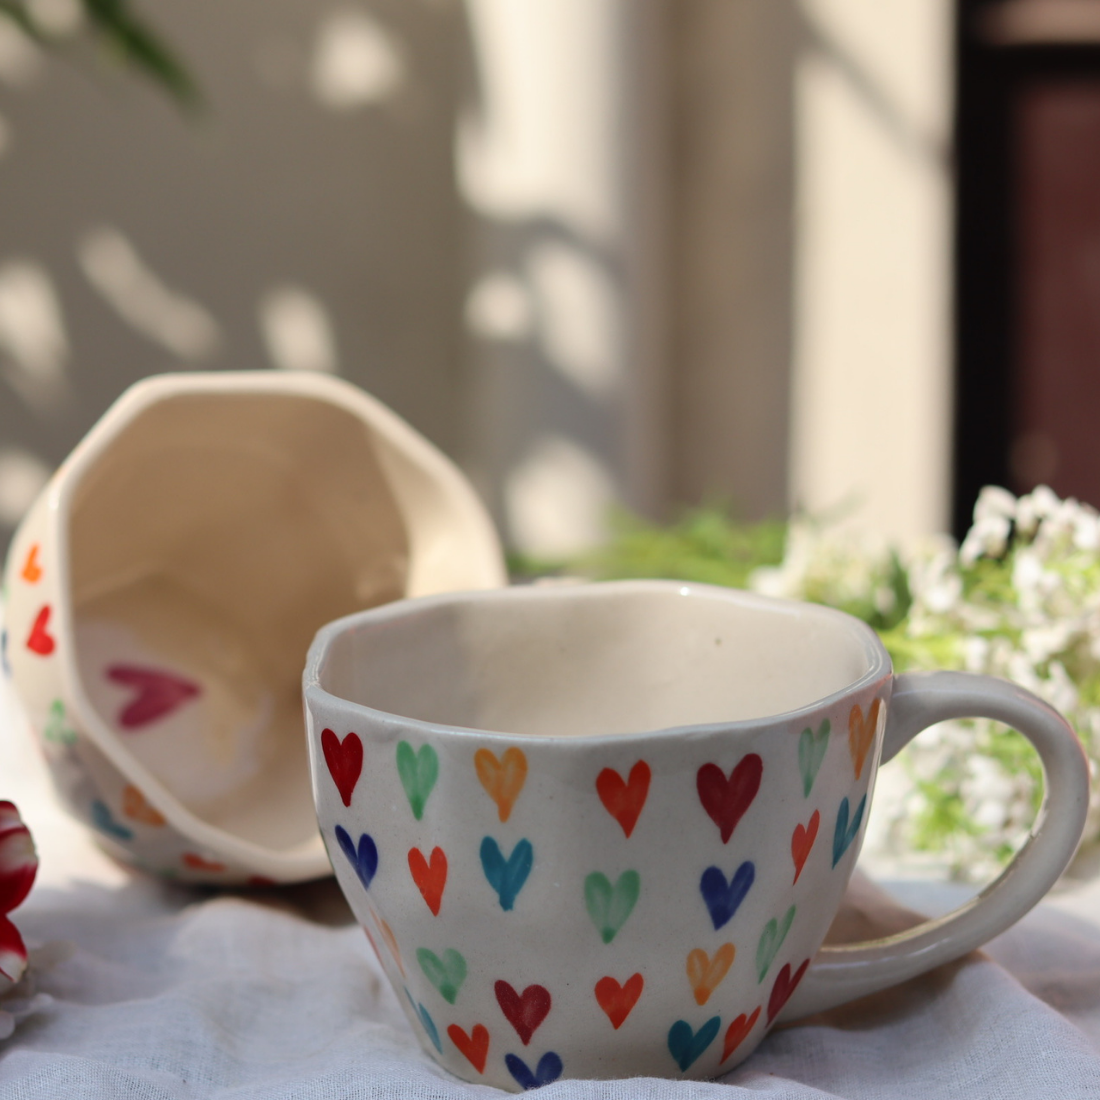 loveislove & heart mug made by ceramic 